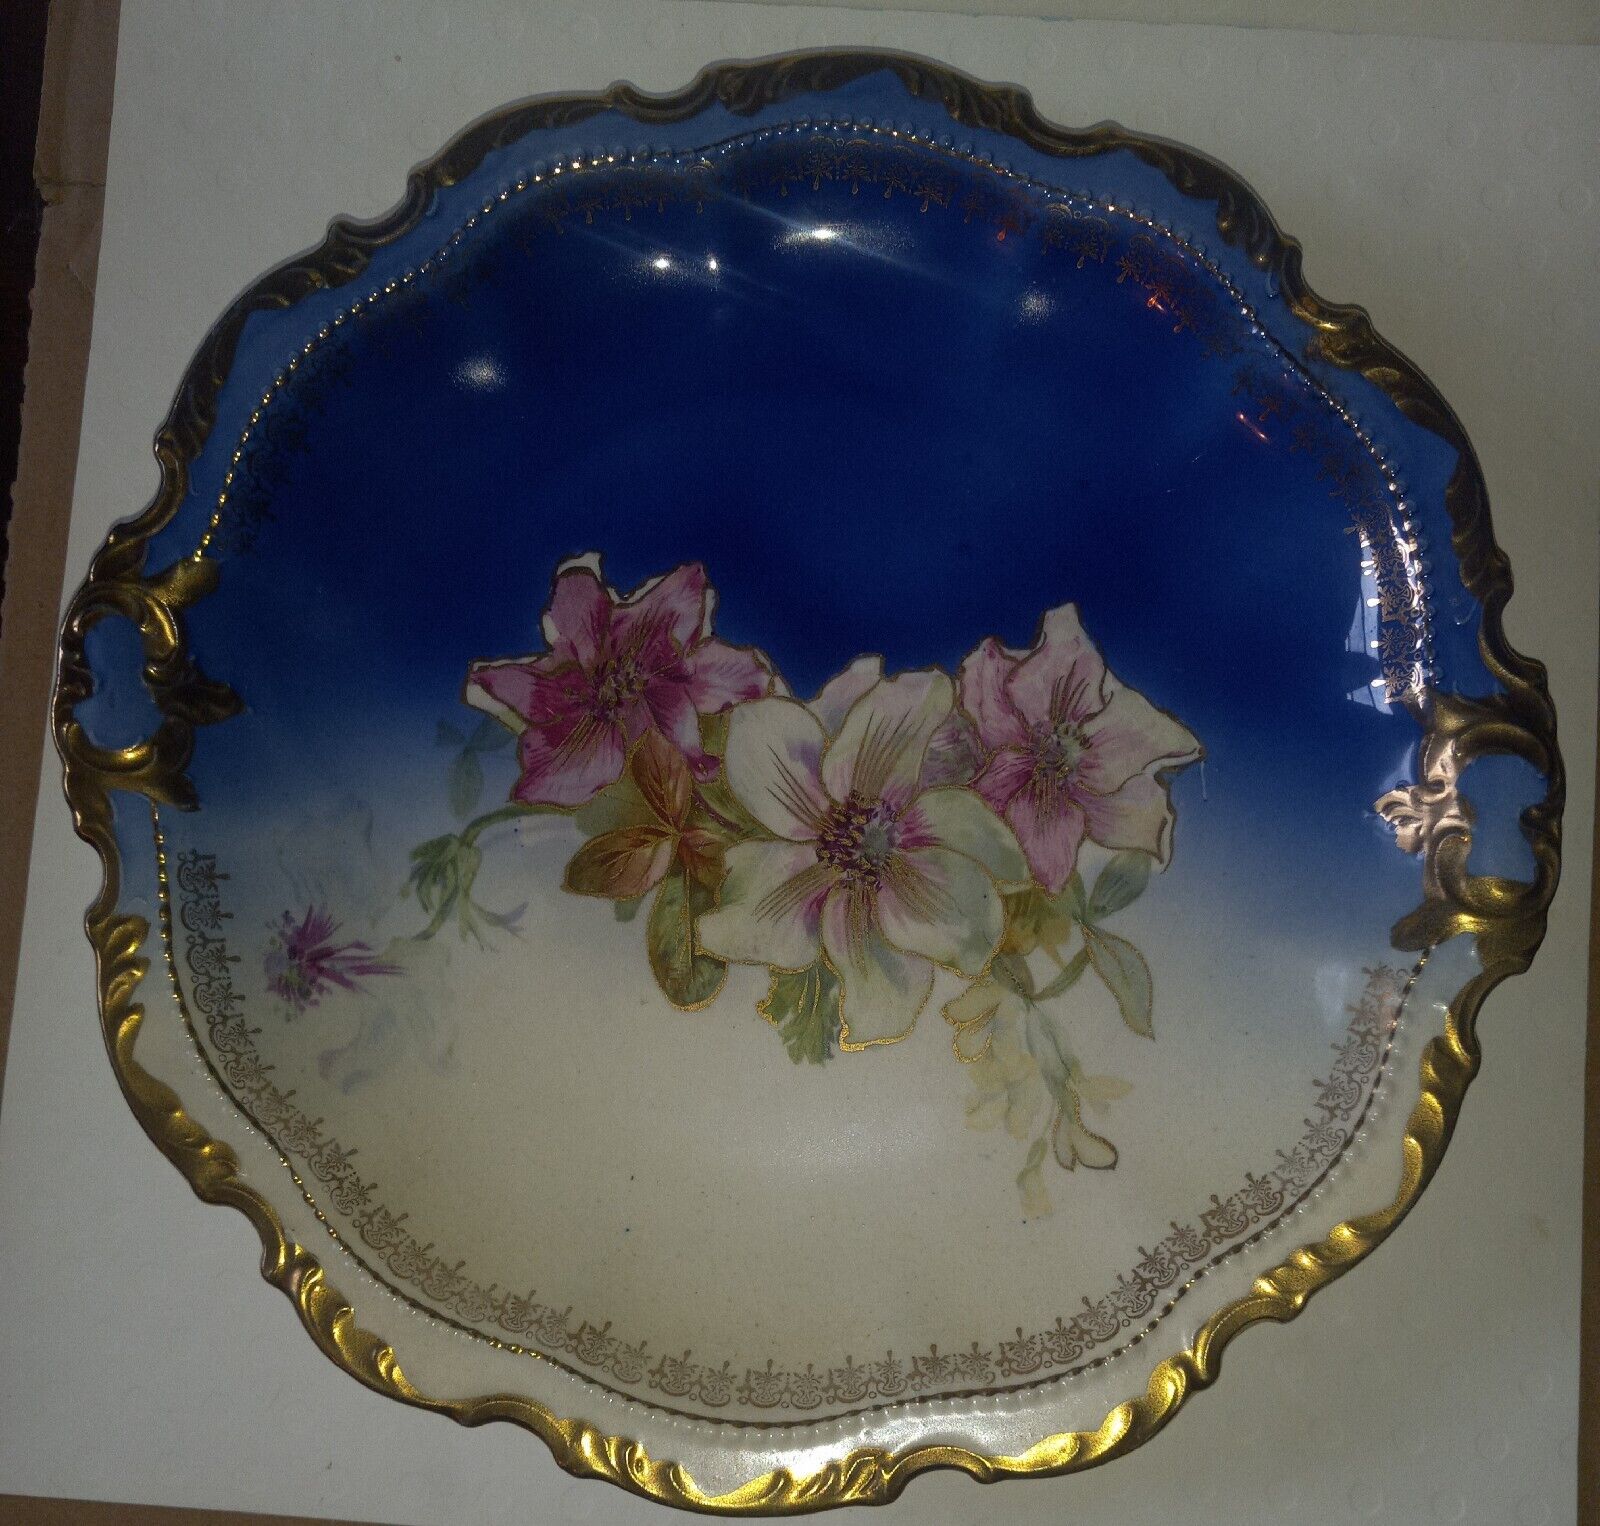  Empire China Large Vintage Cobalt Blue Plate/Platter Gold Trim Floral  10.5”in 